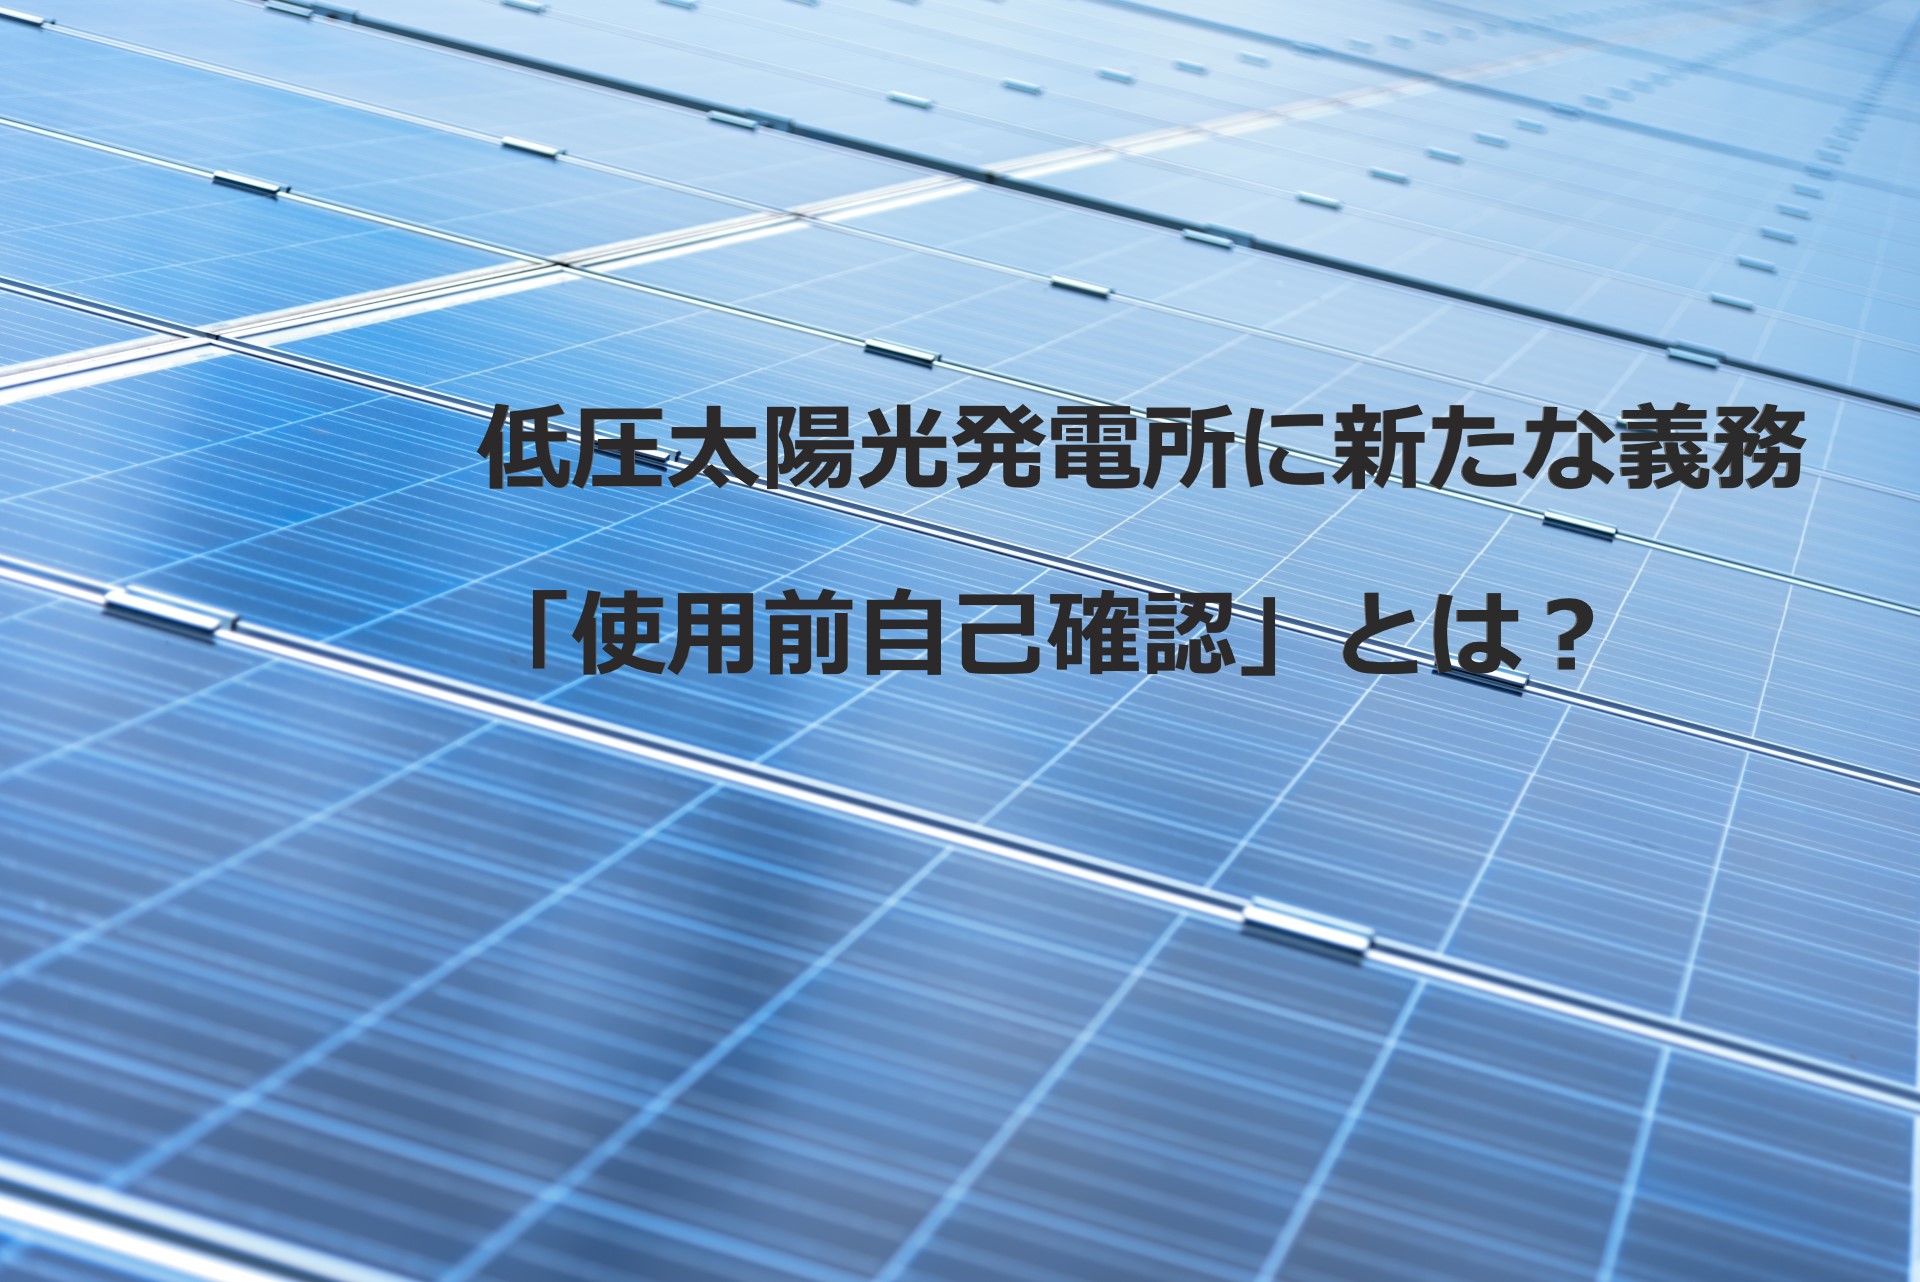 低圧太陽光発電所に新たな義務「使用前自己確認」とは？